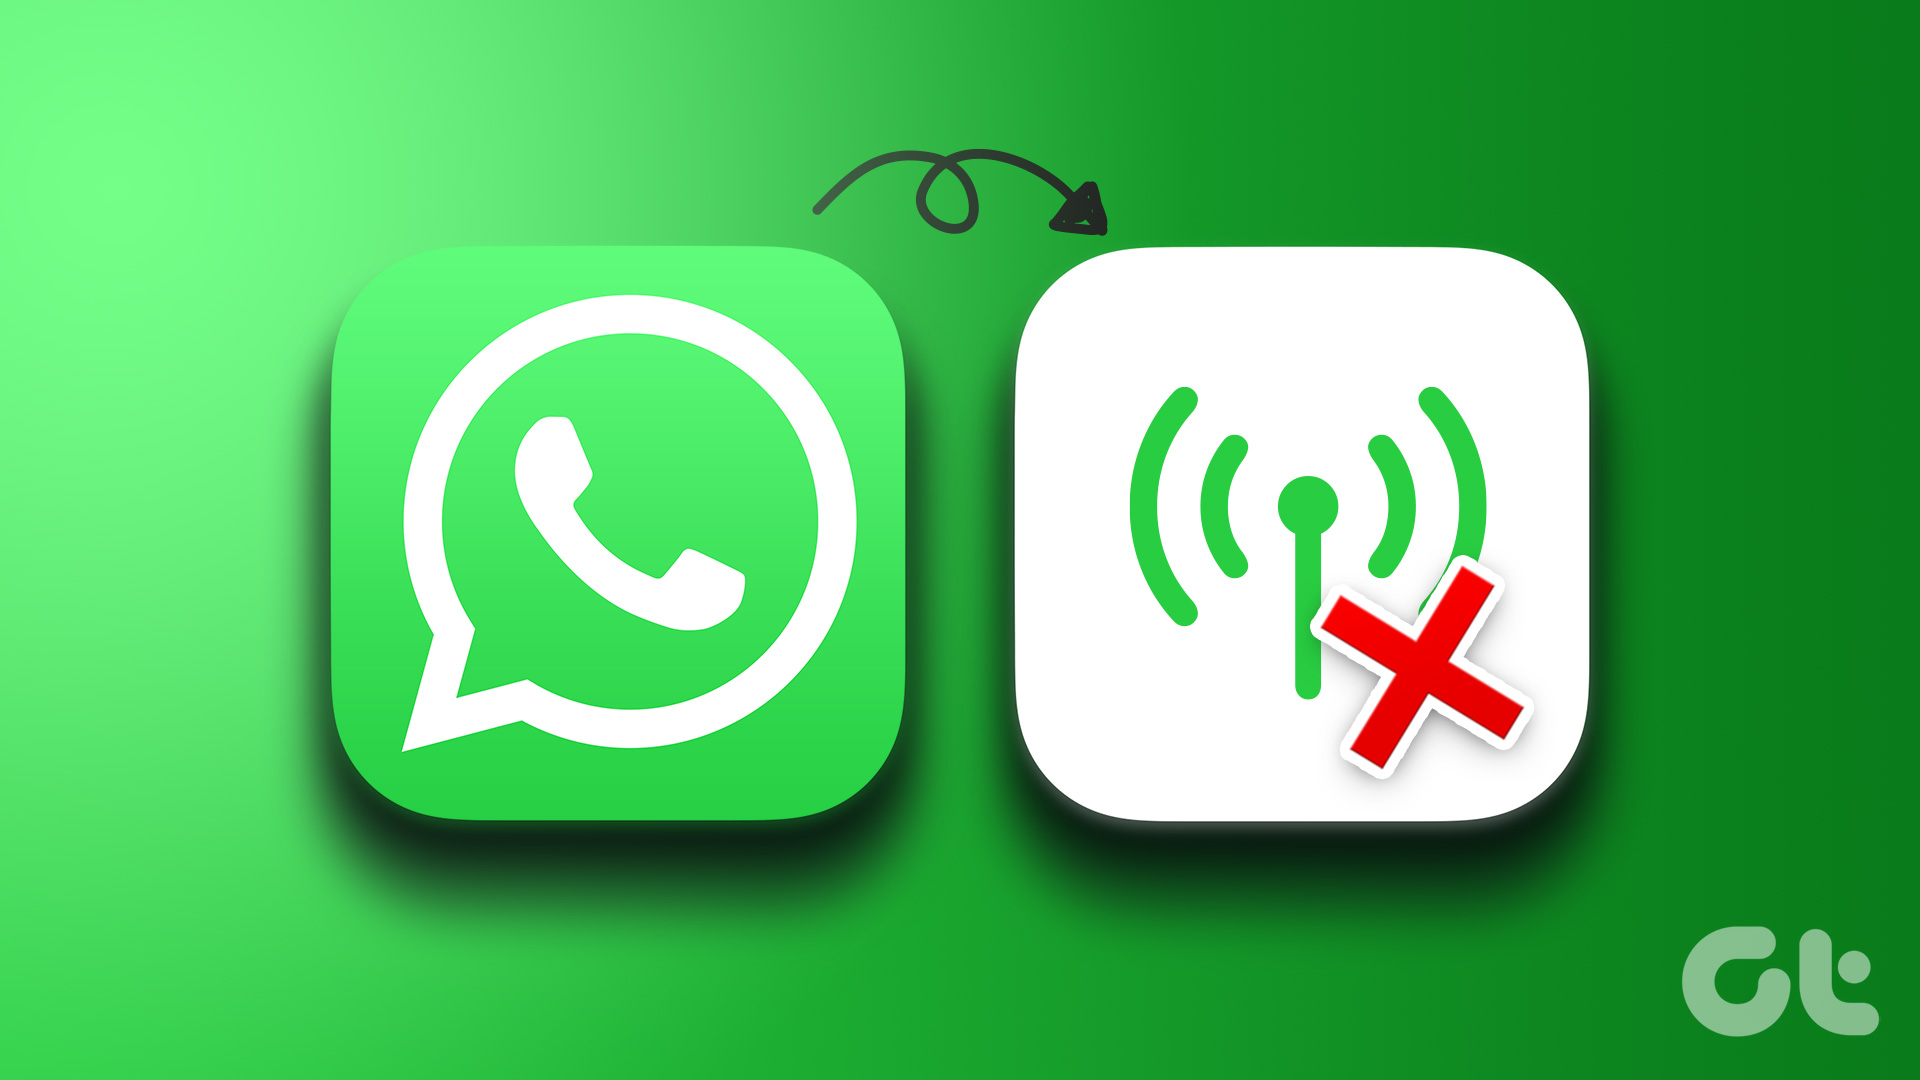 WhatsApp không hoạt động: Nếu WhatsApp của bạn không hoạt động, hãy truy cập trang web của chúng tôi để tìm những cách khắc phục. Bạn sẽ tìm thấy những giải pháp đơn giản nhất để khắc phục sự cố và trở lại liên lạc với những người quan trọng.